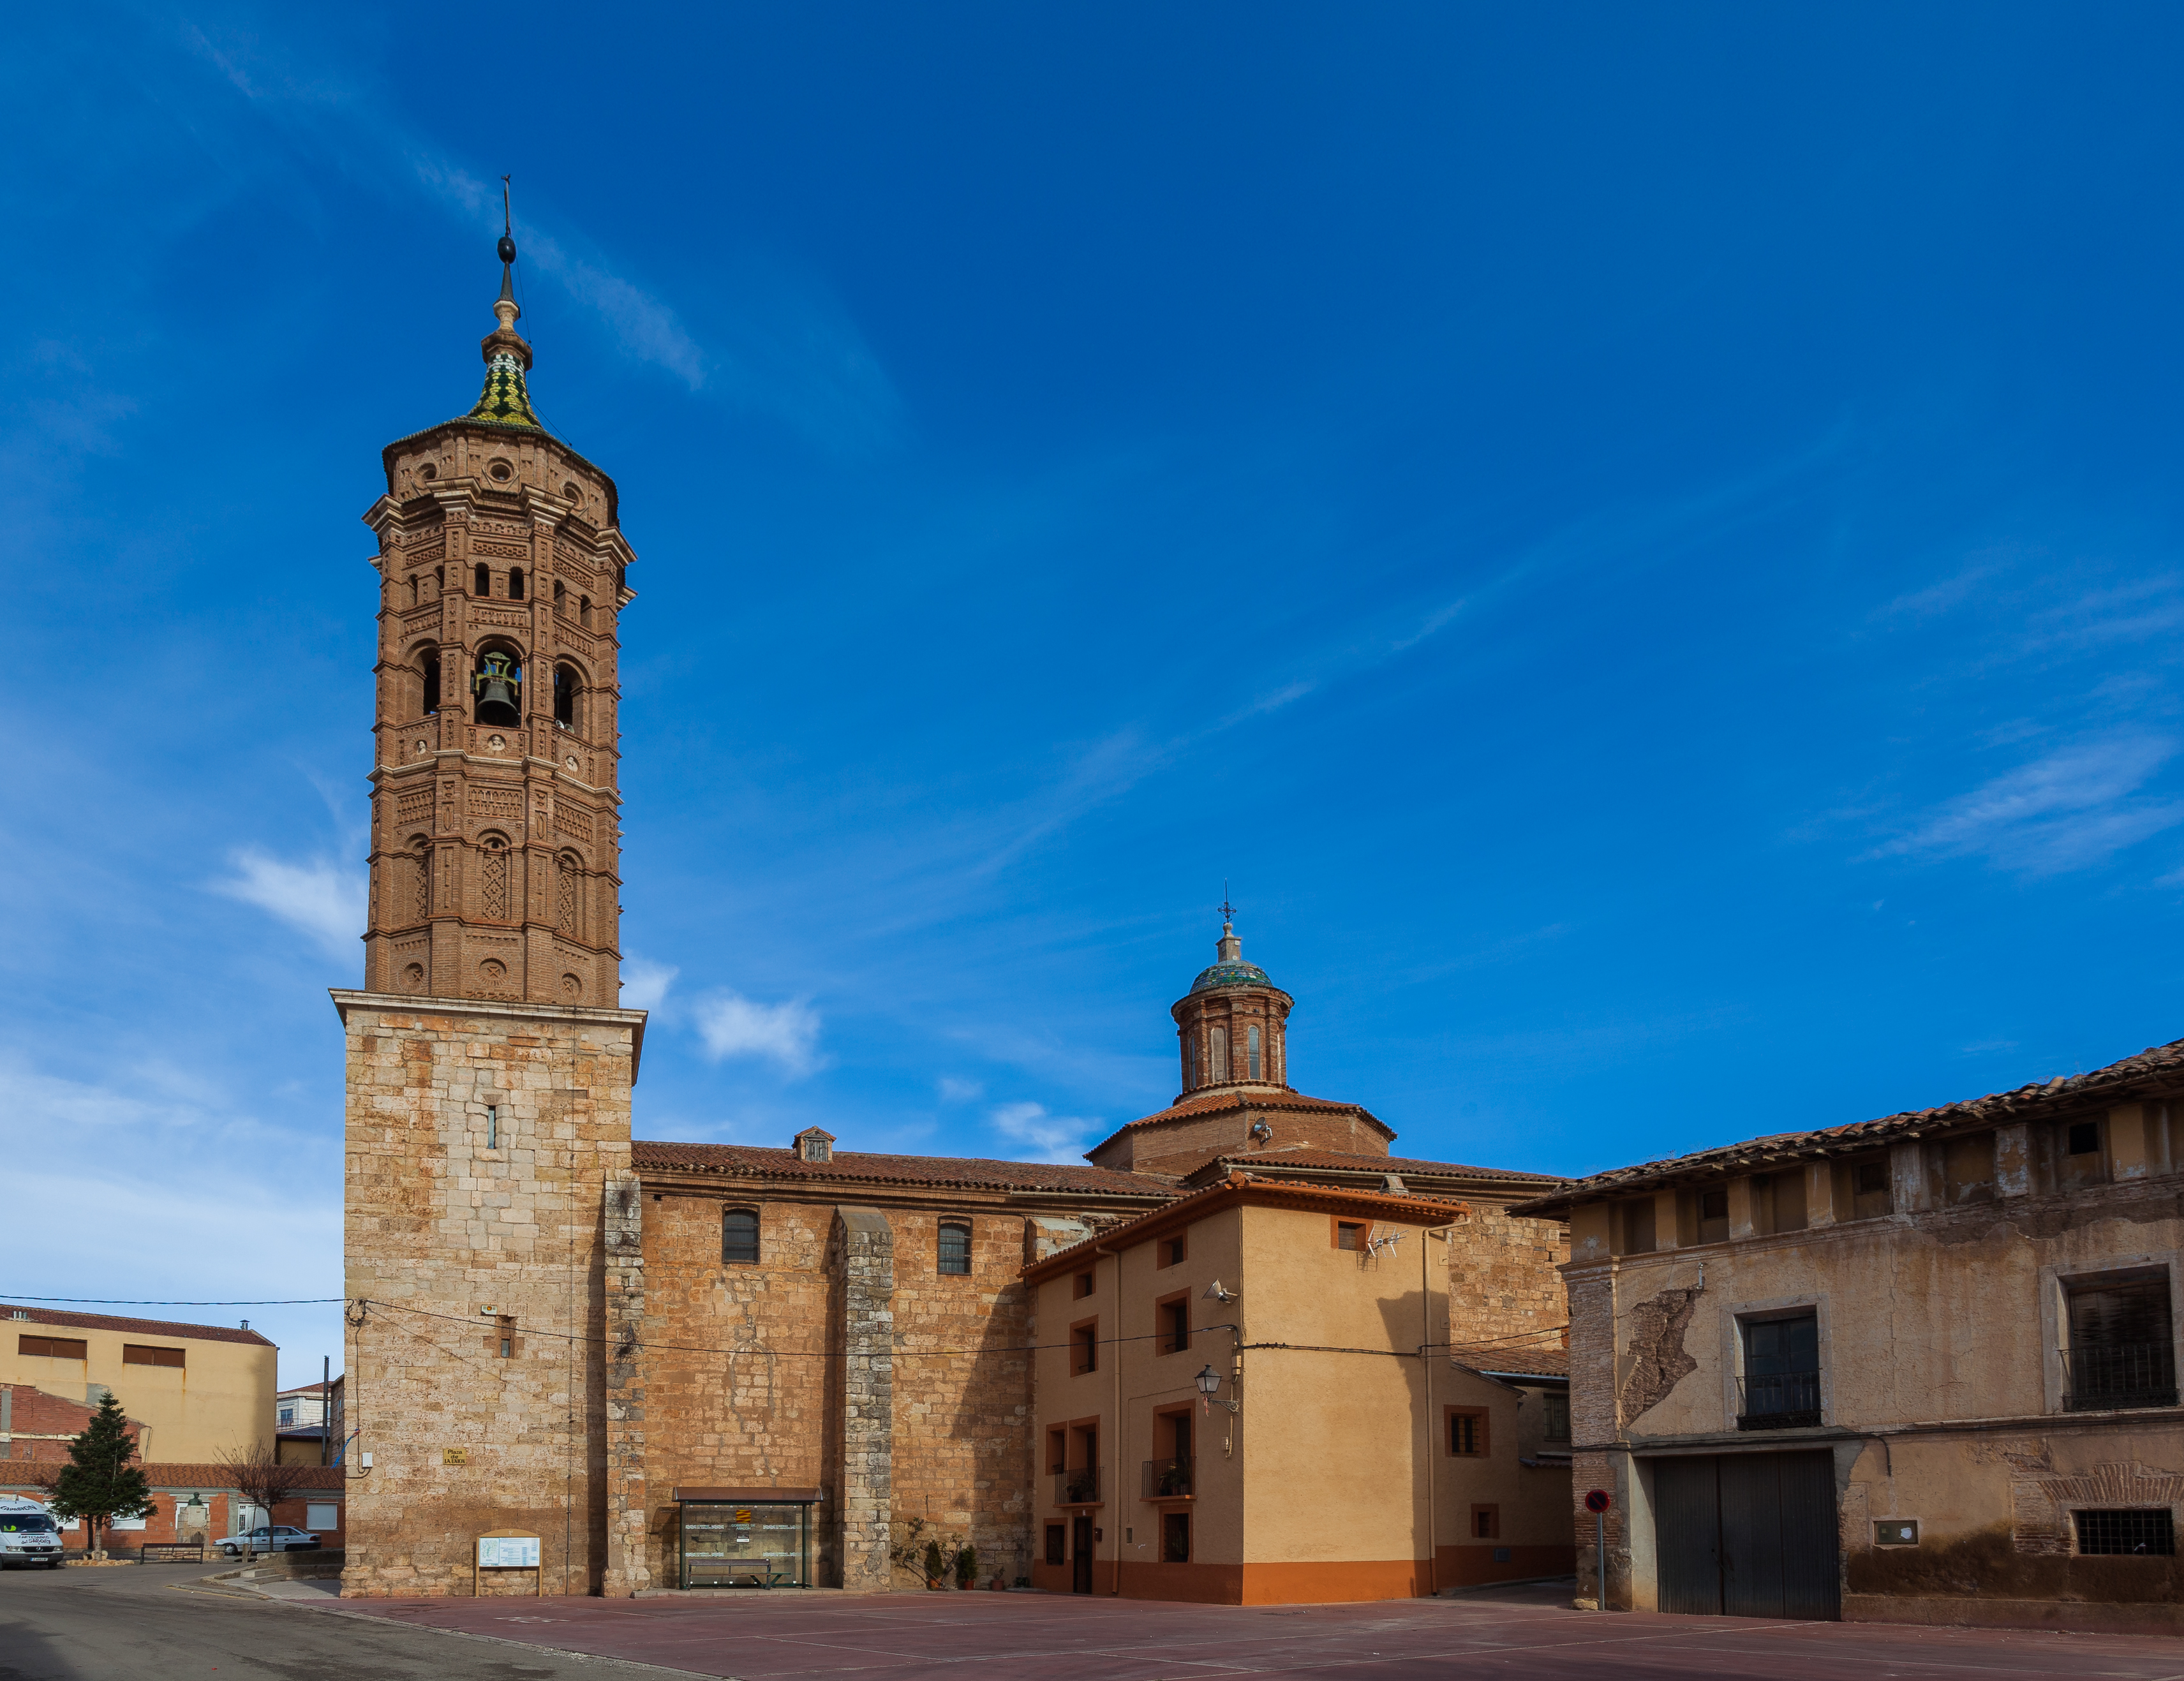 Iglesia de la Asunción, Báguena, Teruel, España, 2014-01-08, DD 05